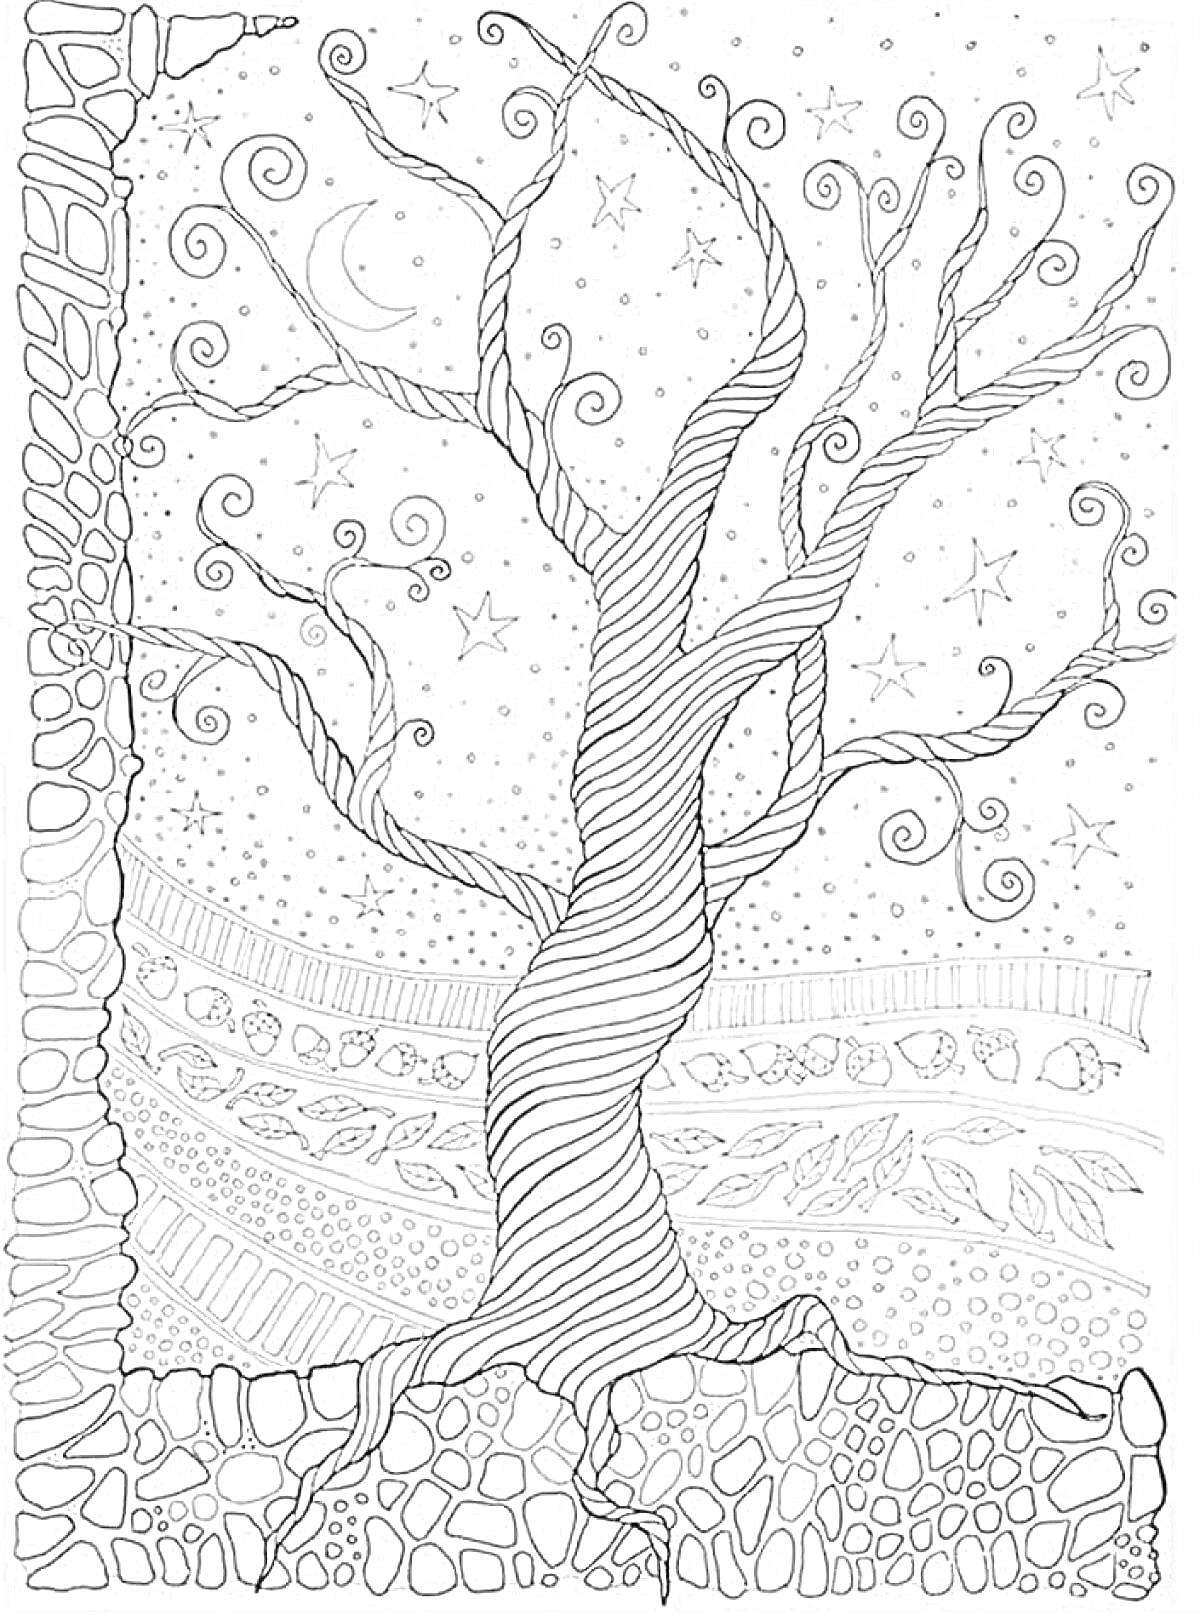 Раскраска Дерево с завитыми ветвями, звездами и месяцем на фоне, обрамленное узорами из камней, листьев и линий